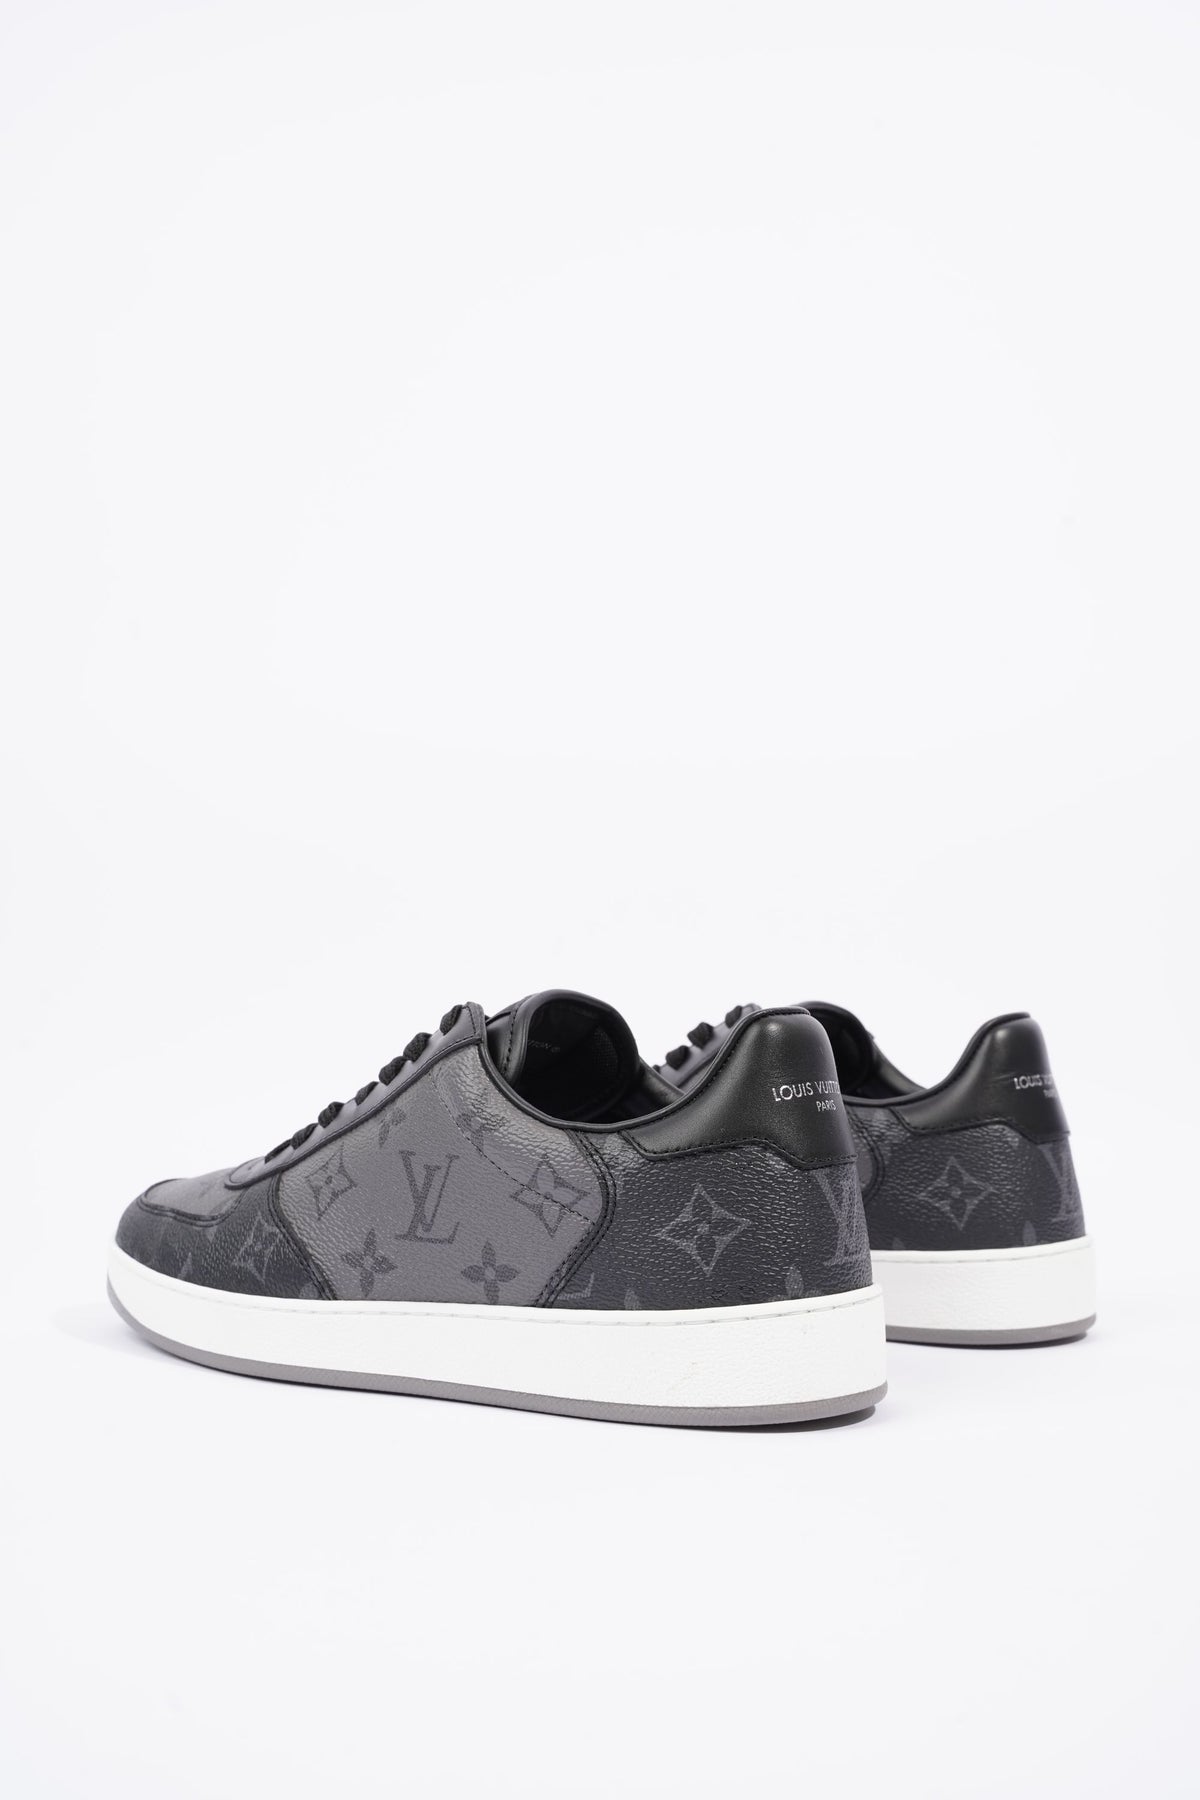 Louis Vuitton Rivoli Sneaker, Black, 6.5